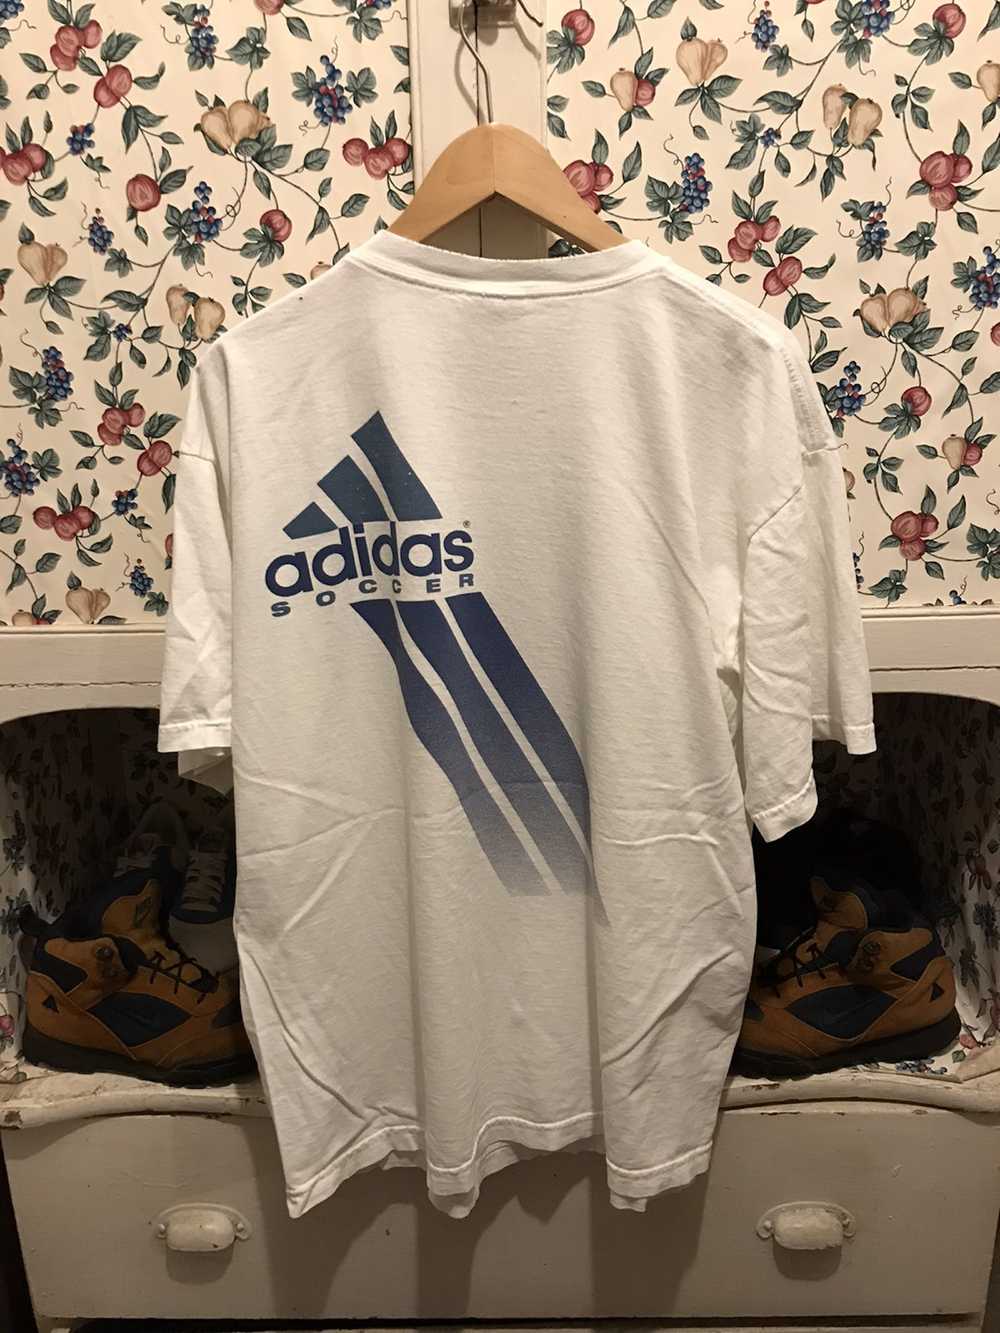 Adidas × Vintage Vintage 90s Adidas T-shirt - image 4